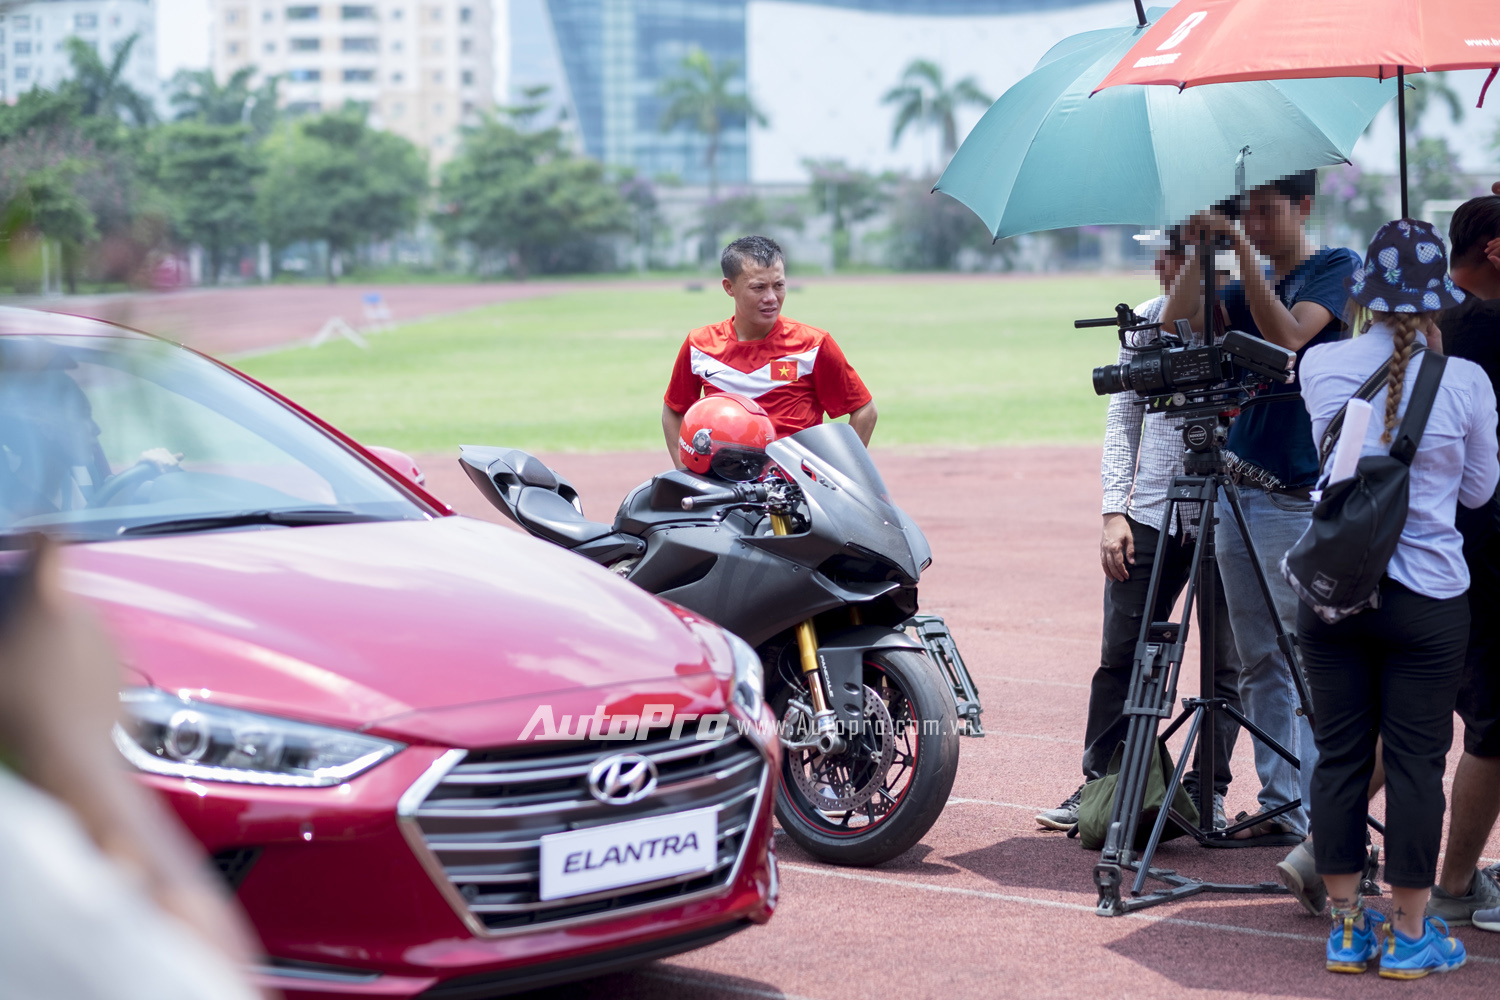 
Những hình ảnh này cho thấy có vẻ như cầu thủ Thành Lương đang tham gia quay quảng cáo cùng chiếc Hyundai Elantra 2016.
